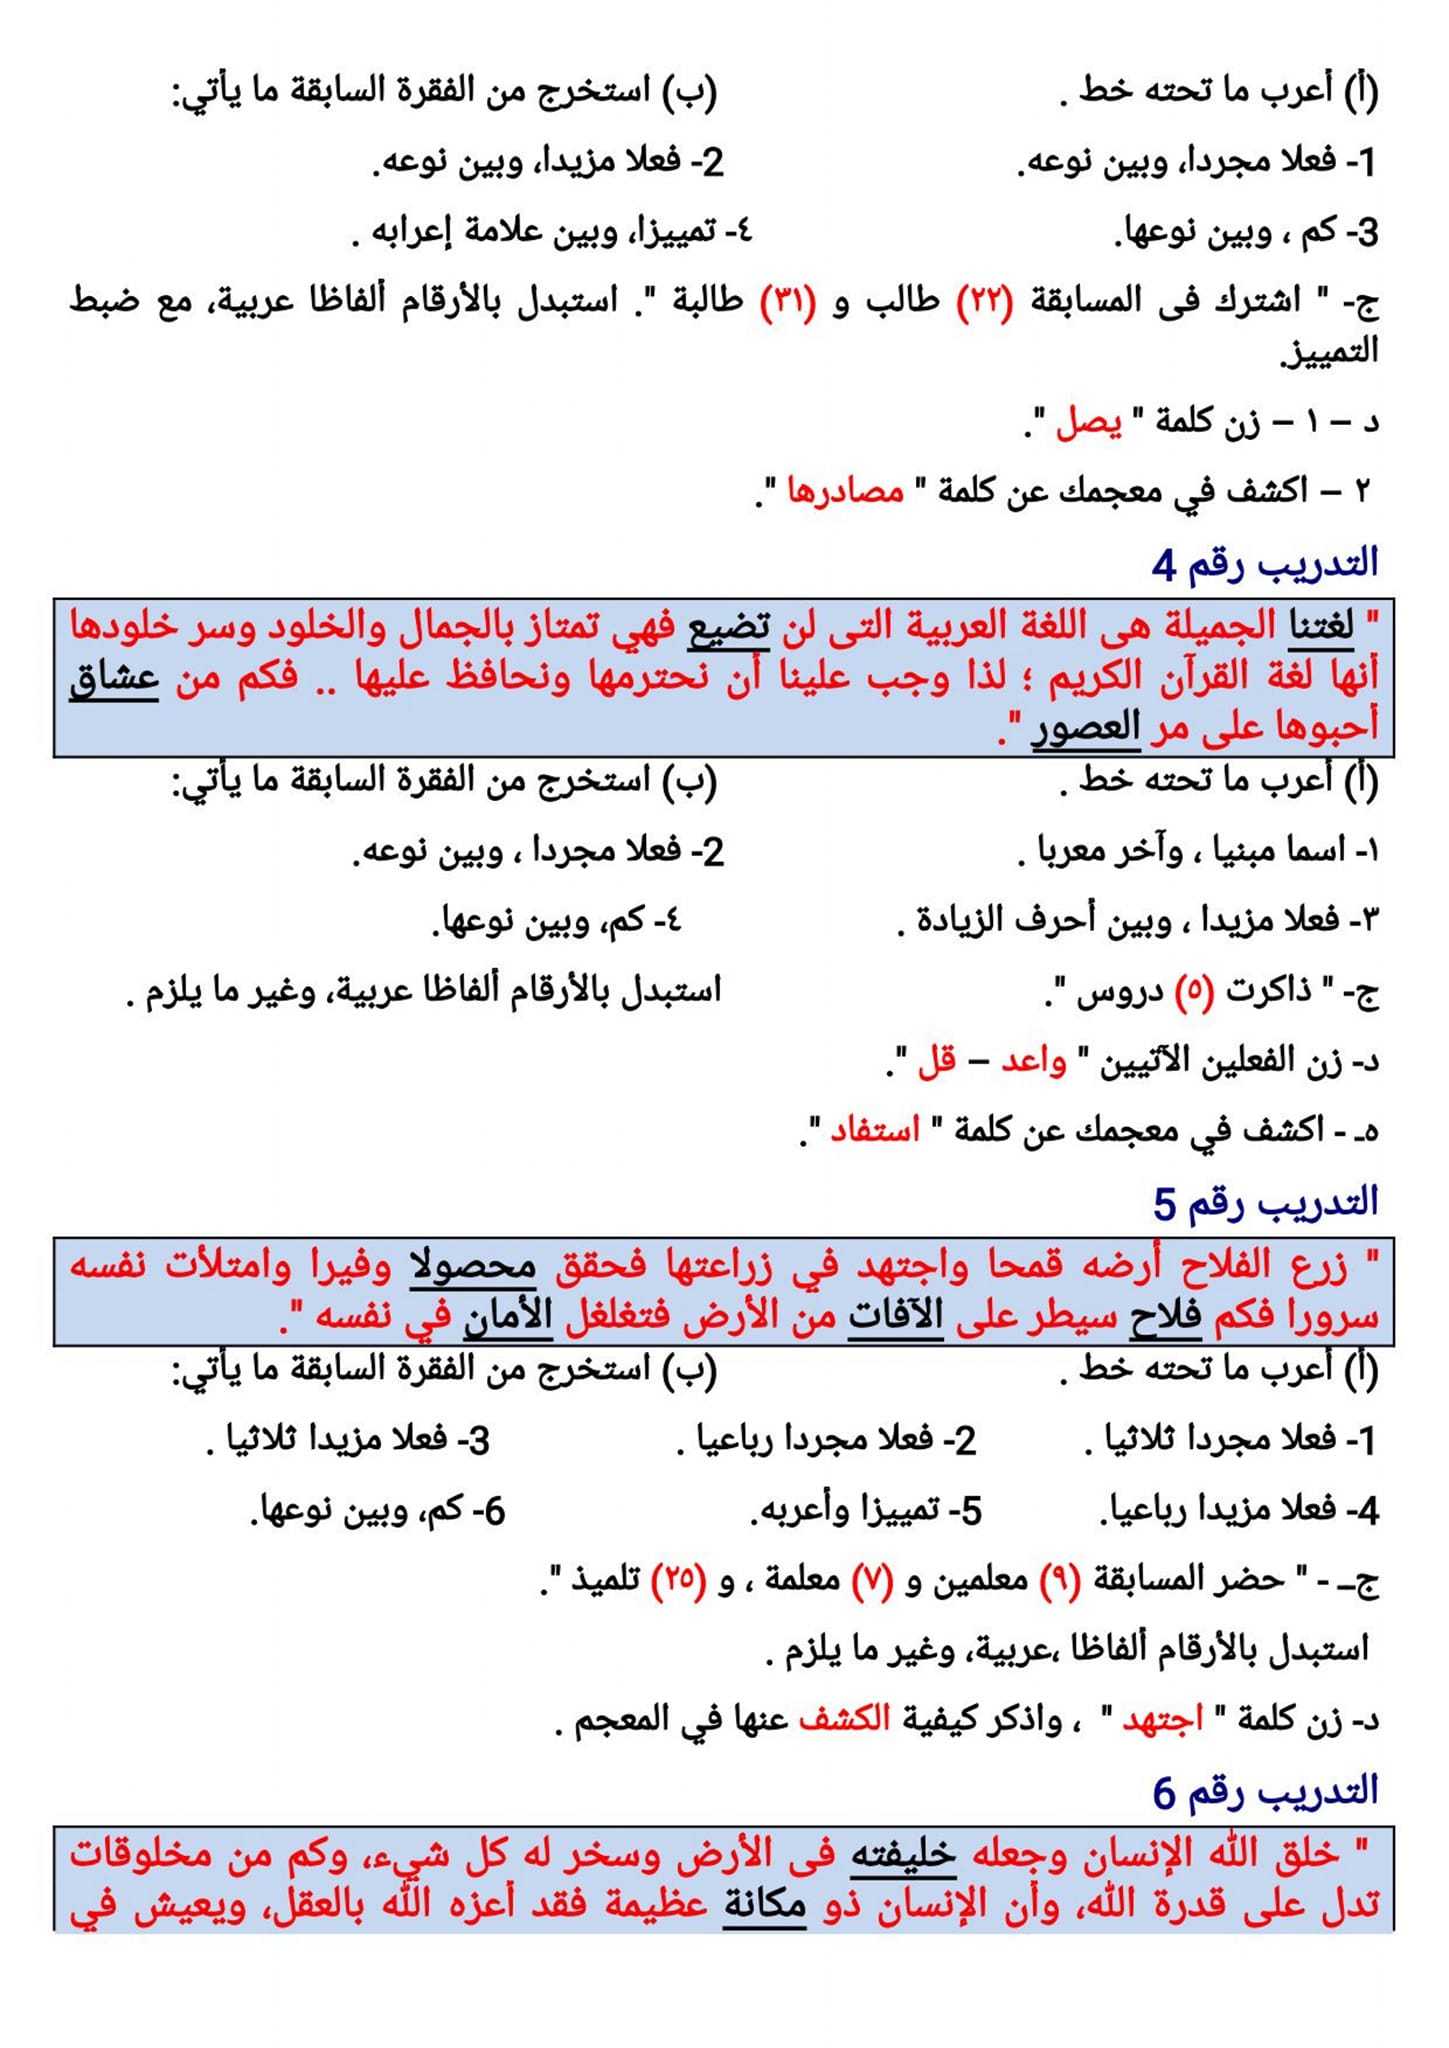 مدرس اول ١٠٠ قطعة نحو فى اللغة العربية للصف الثاني الإعدادي الترم الثانى أ/ أحمد صالح عبد	